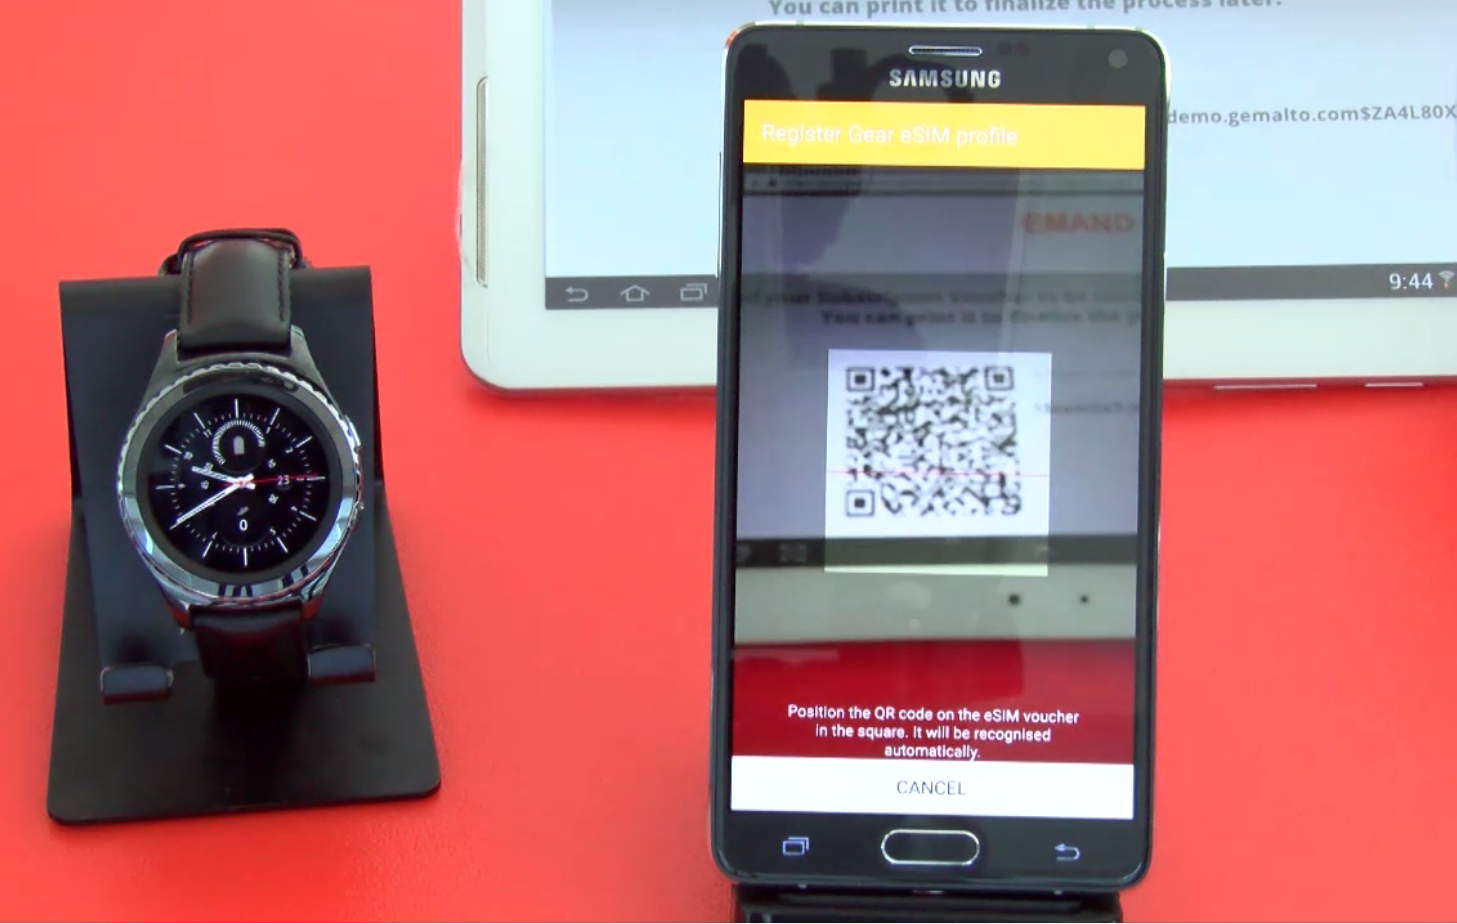 esim activation on Smartwatch Samsung Gear S2 via qr code